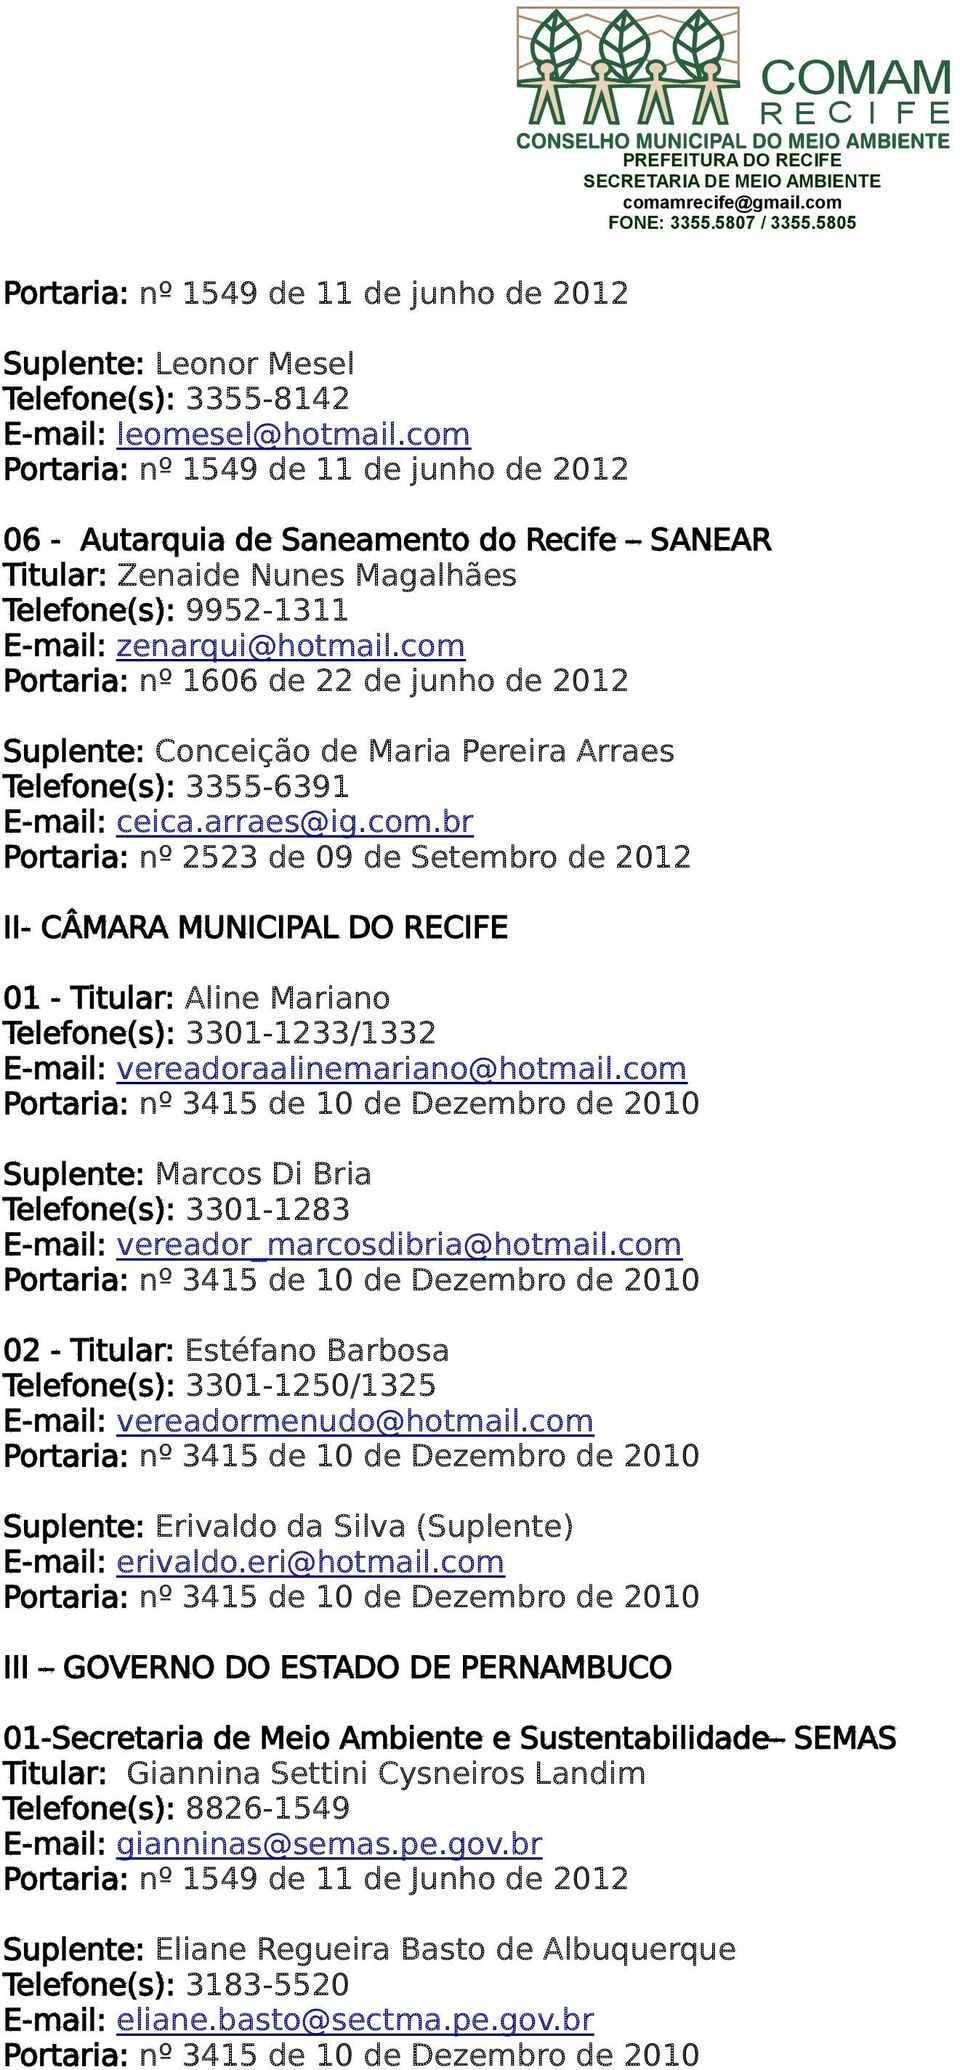 com Portaria: nº 1606 de 22 de junho de 2012 Suplente: Conceição de Maria Pereira Arraes Telefone(s): 3355-6391 E-mail: ceica.arraes@ig.com.br Portaria: nº 2523 de 09 de Setembro de 2012 II- CÂMARA MUNICIPAL DO RECIFE 01 - Titular: Aline Mariano Telefone(s): 3301-1233/1332 E-mail: vereadoraalinemariano@hotmail.